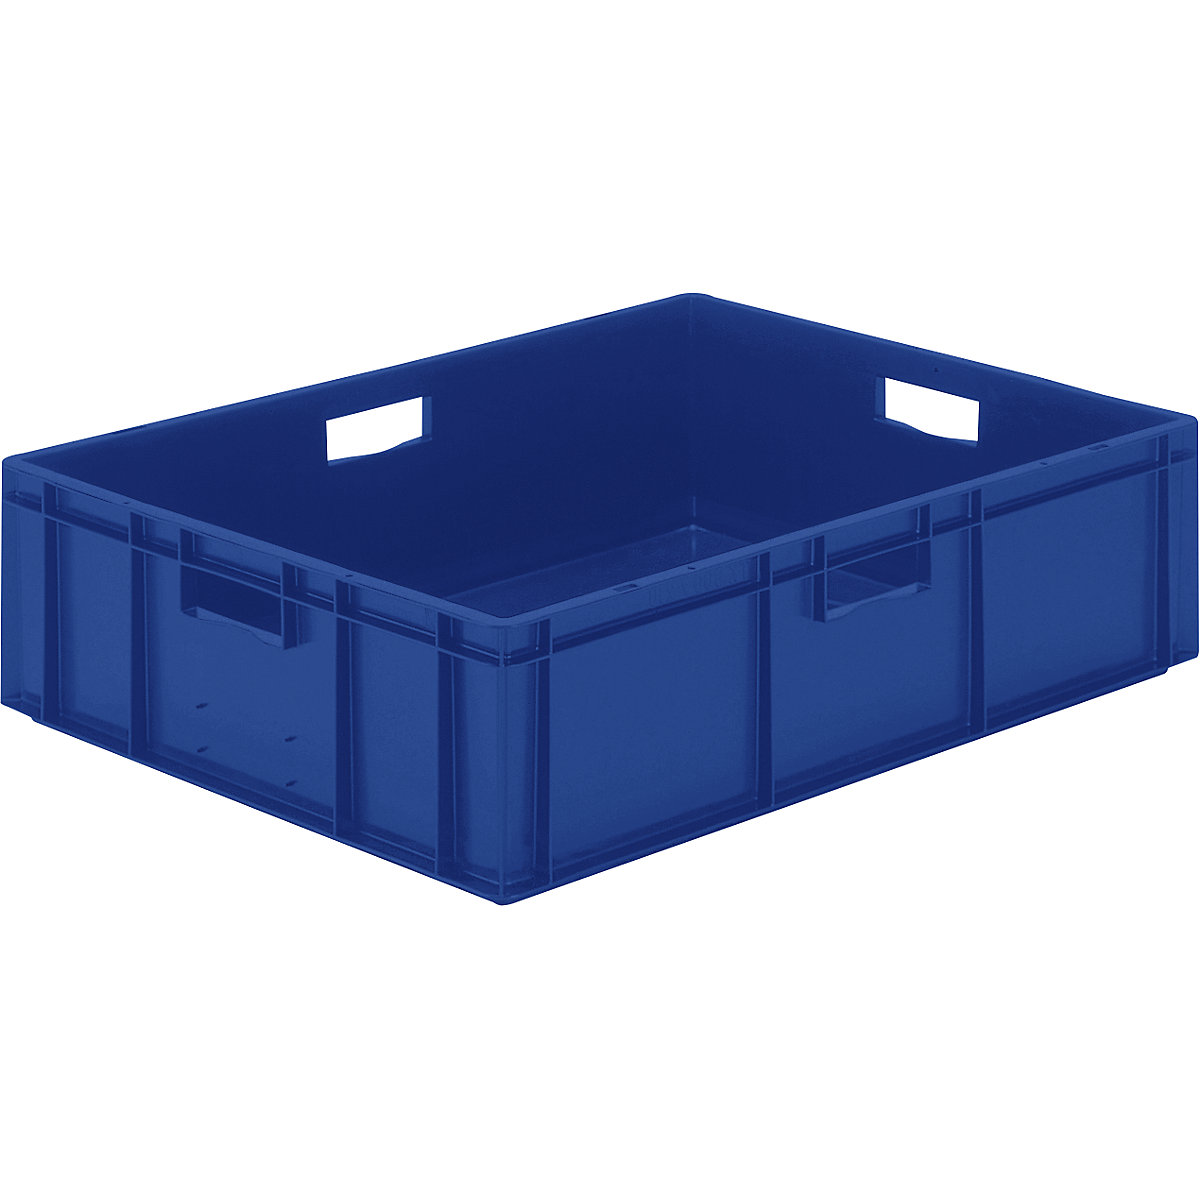 Euro-Format-Stapelbehälter, Wände und Boden geschlossen, LxBxH 800 x 600 x 210 mm, blau, VE 2 Stk-7